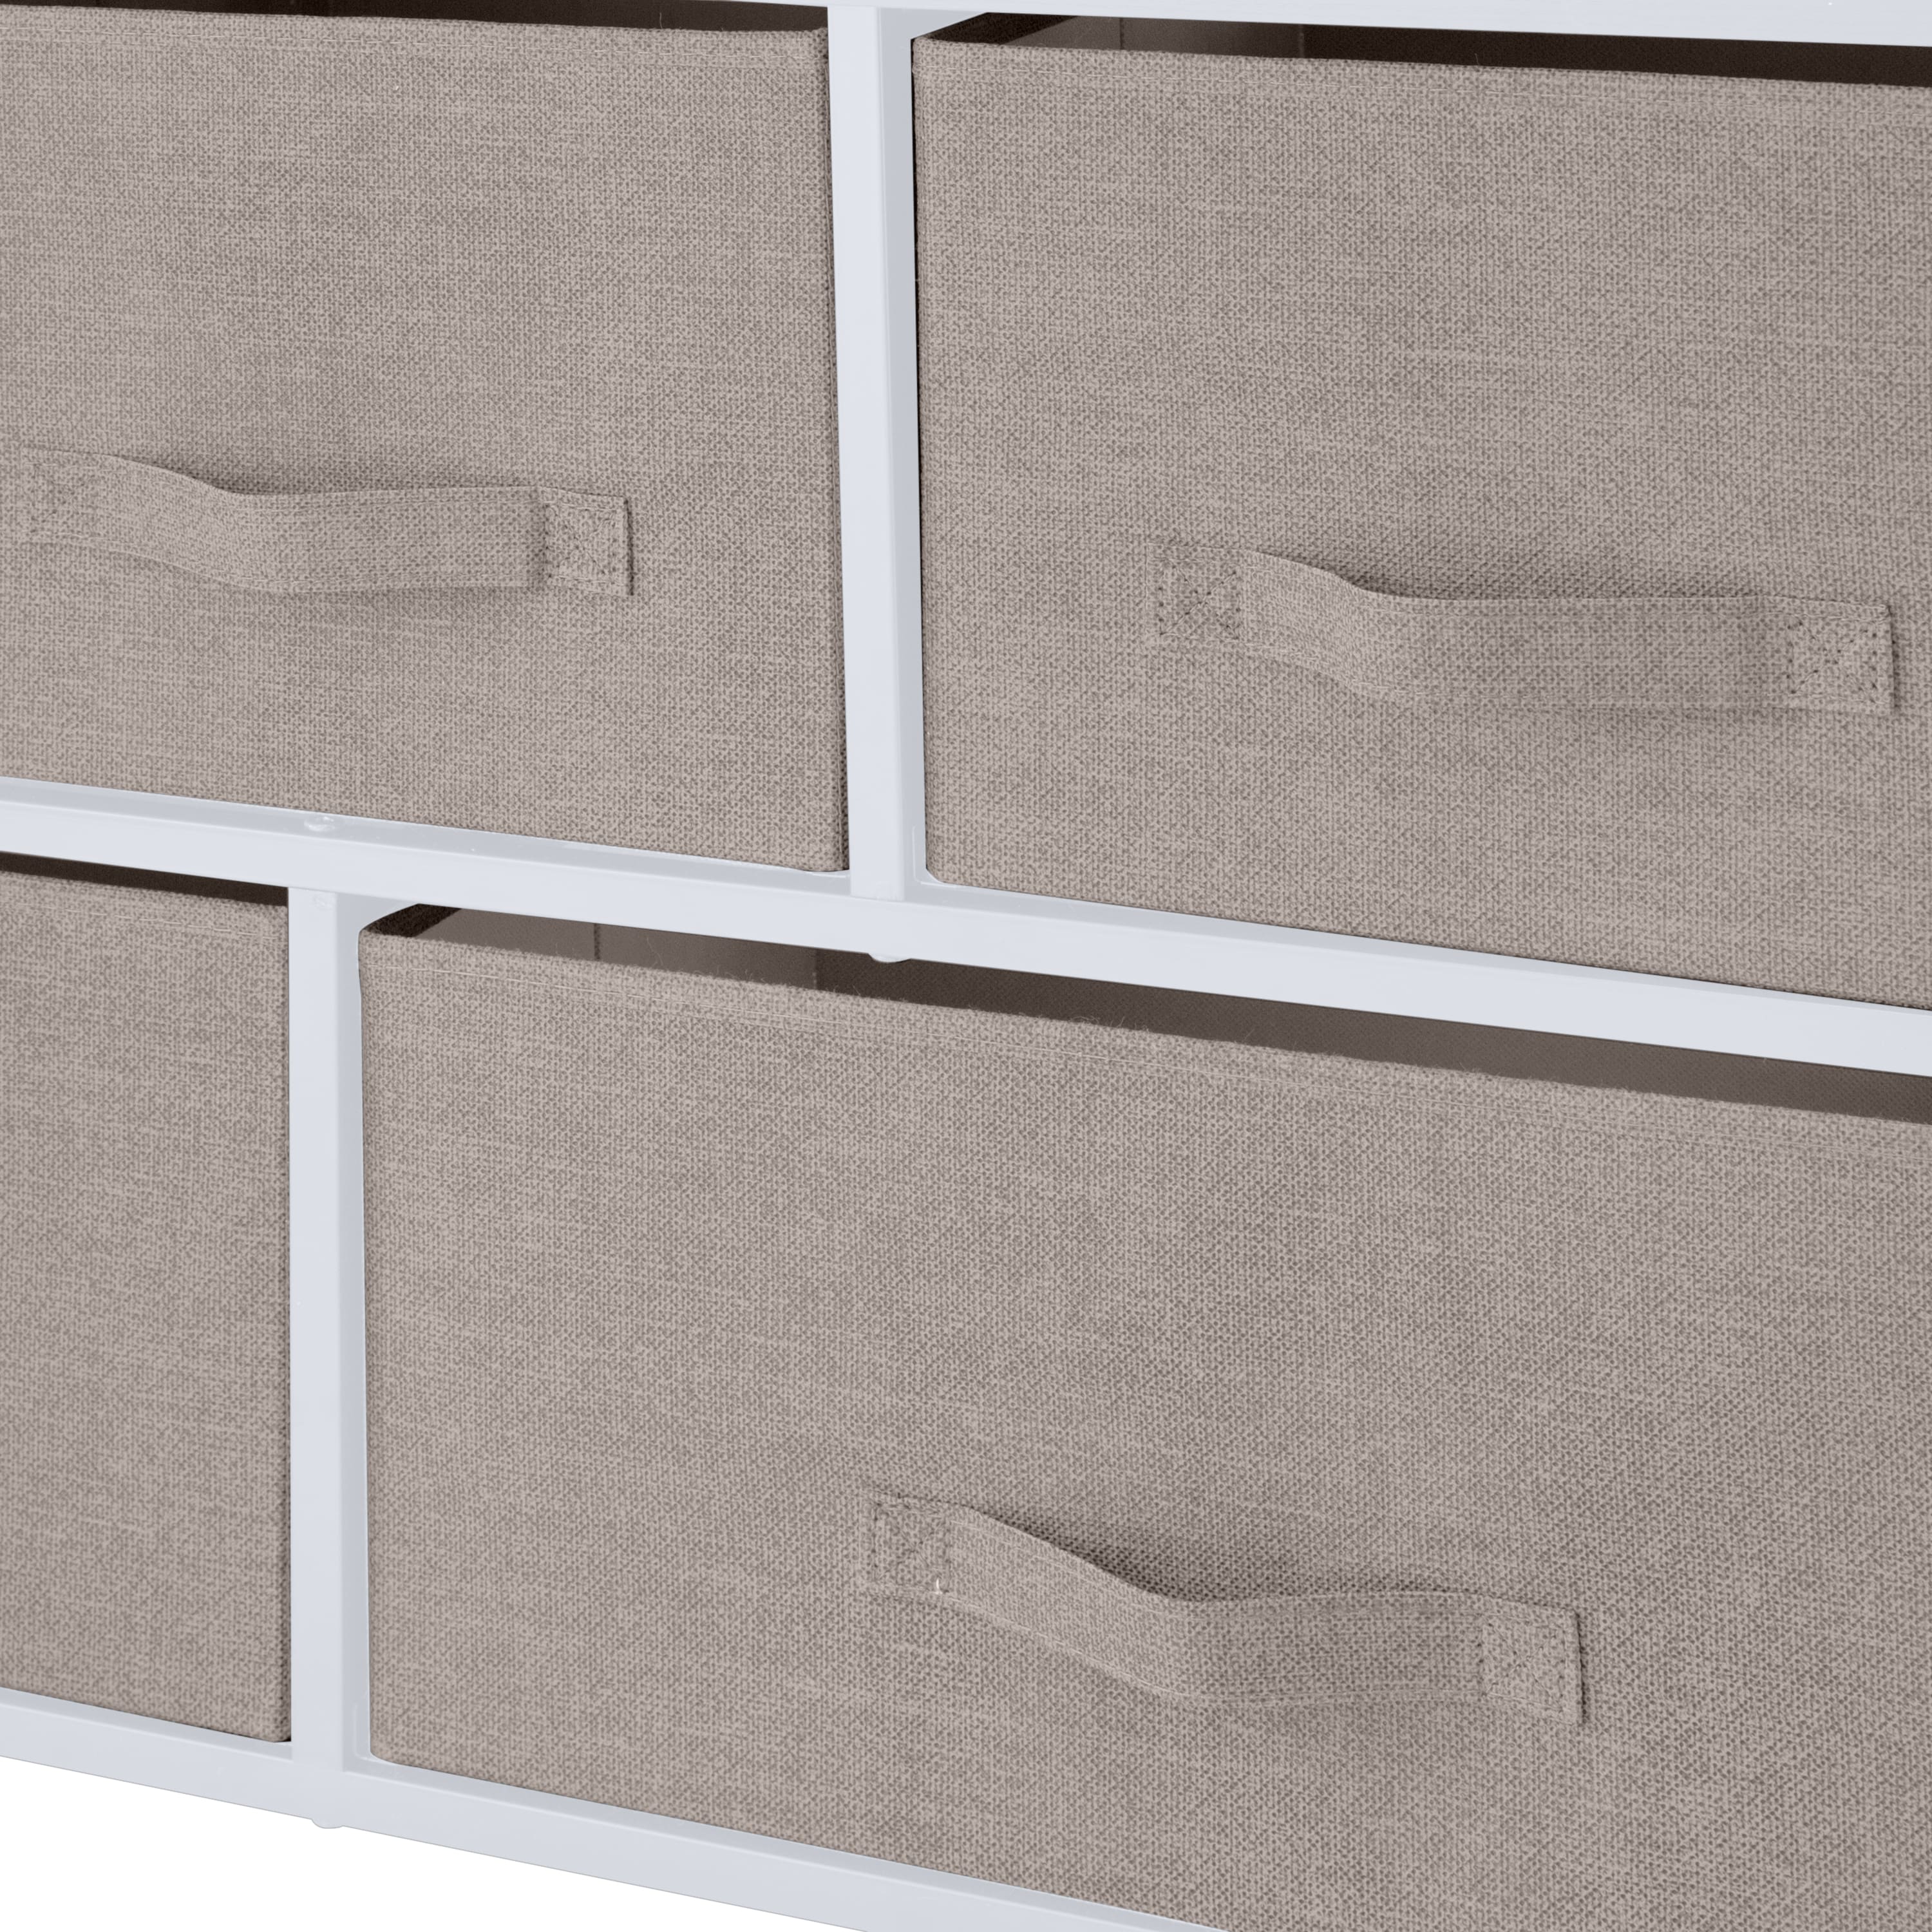 Simplify 5 Drawer Storage Dresser